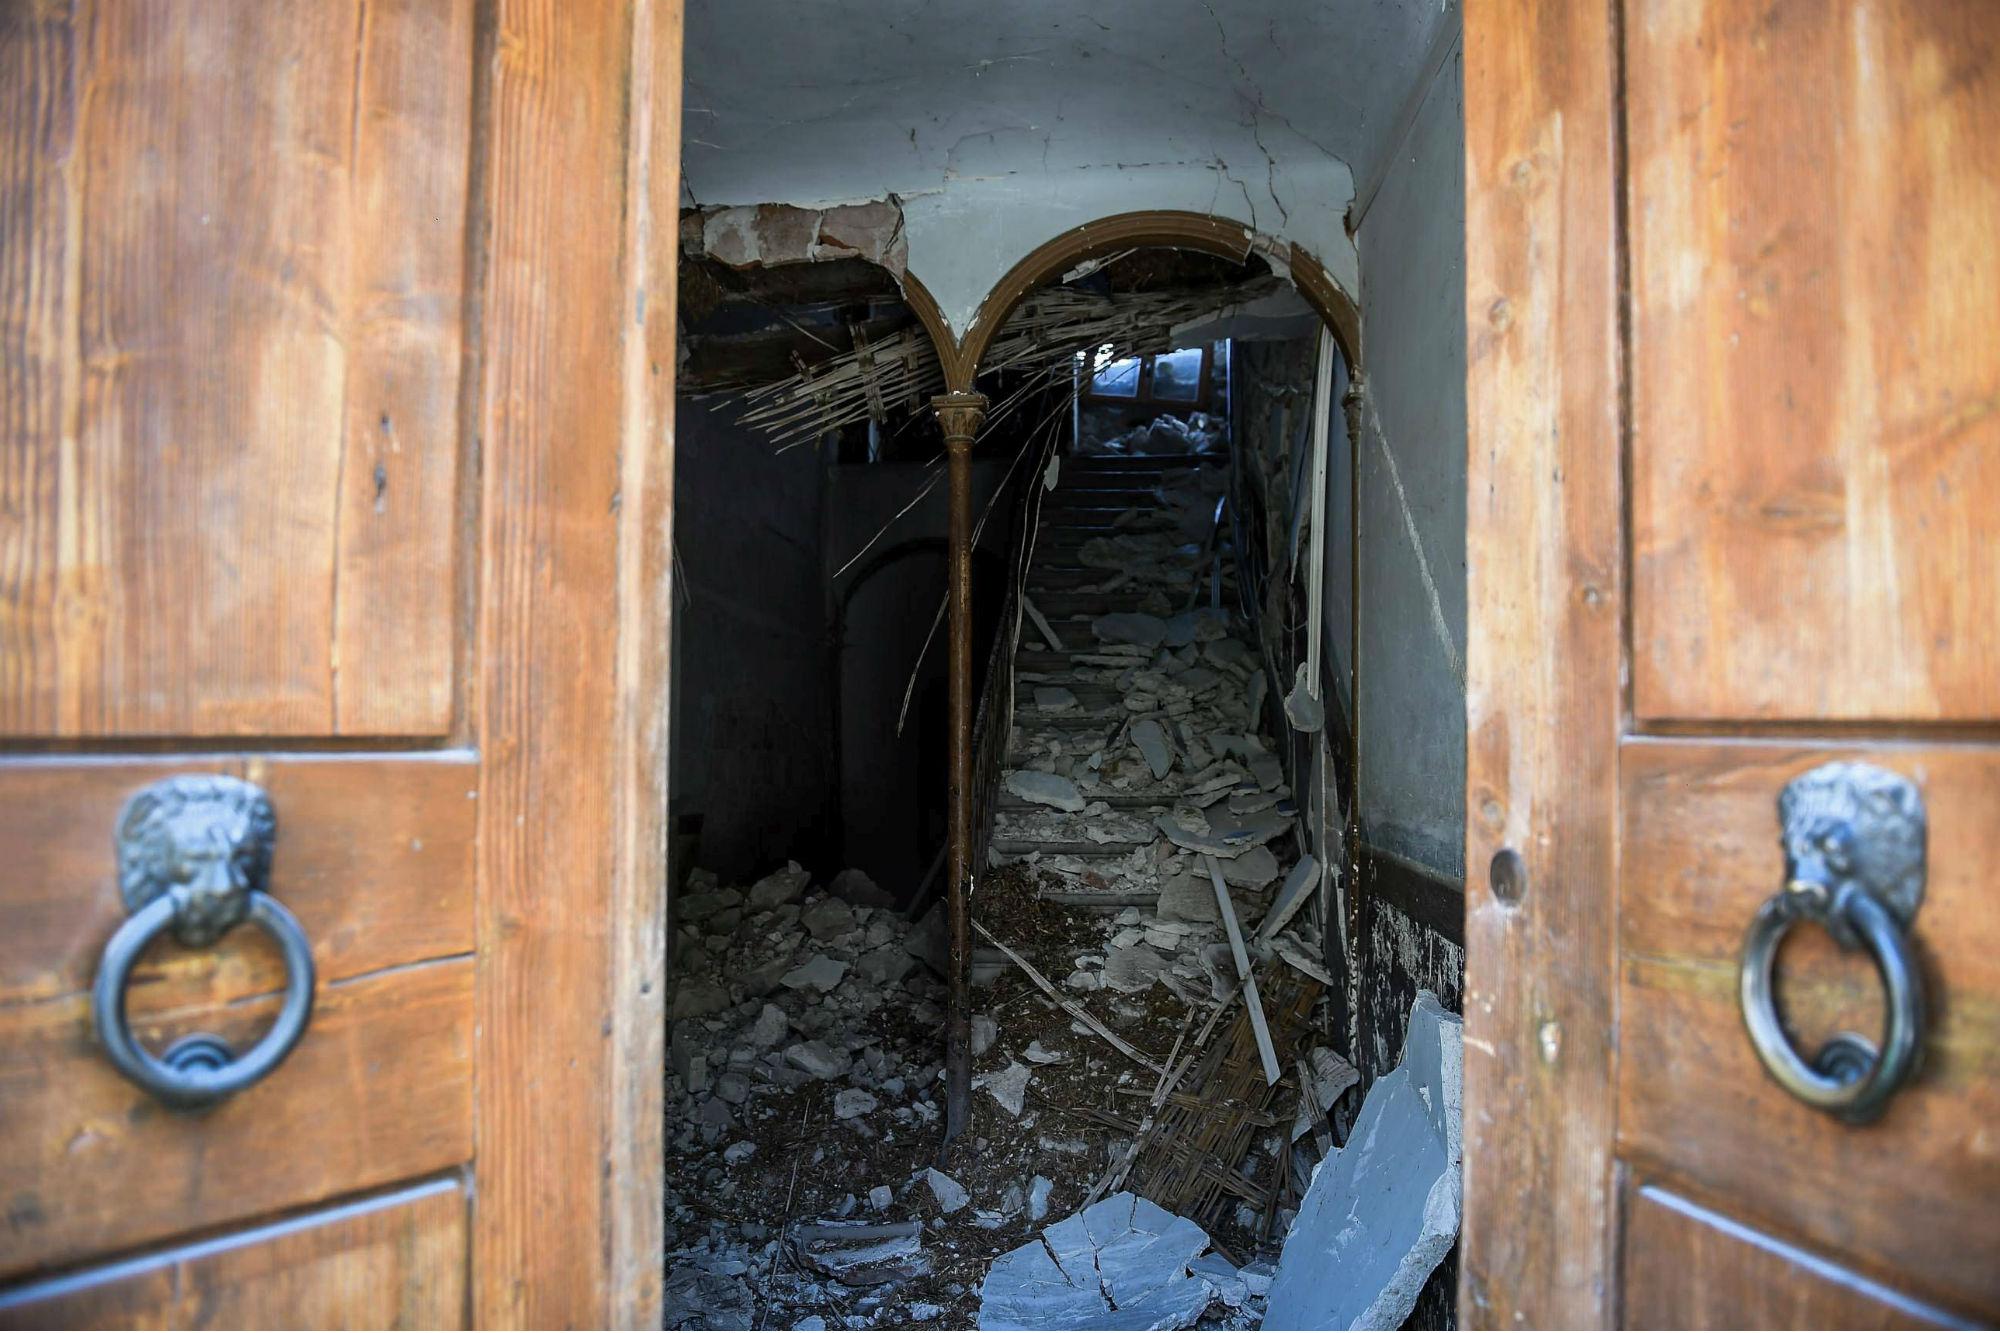 In crisi economica per terremoto, commerciante di Camerino suicida - Adnkronos